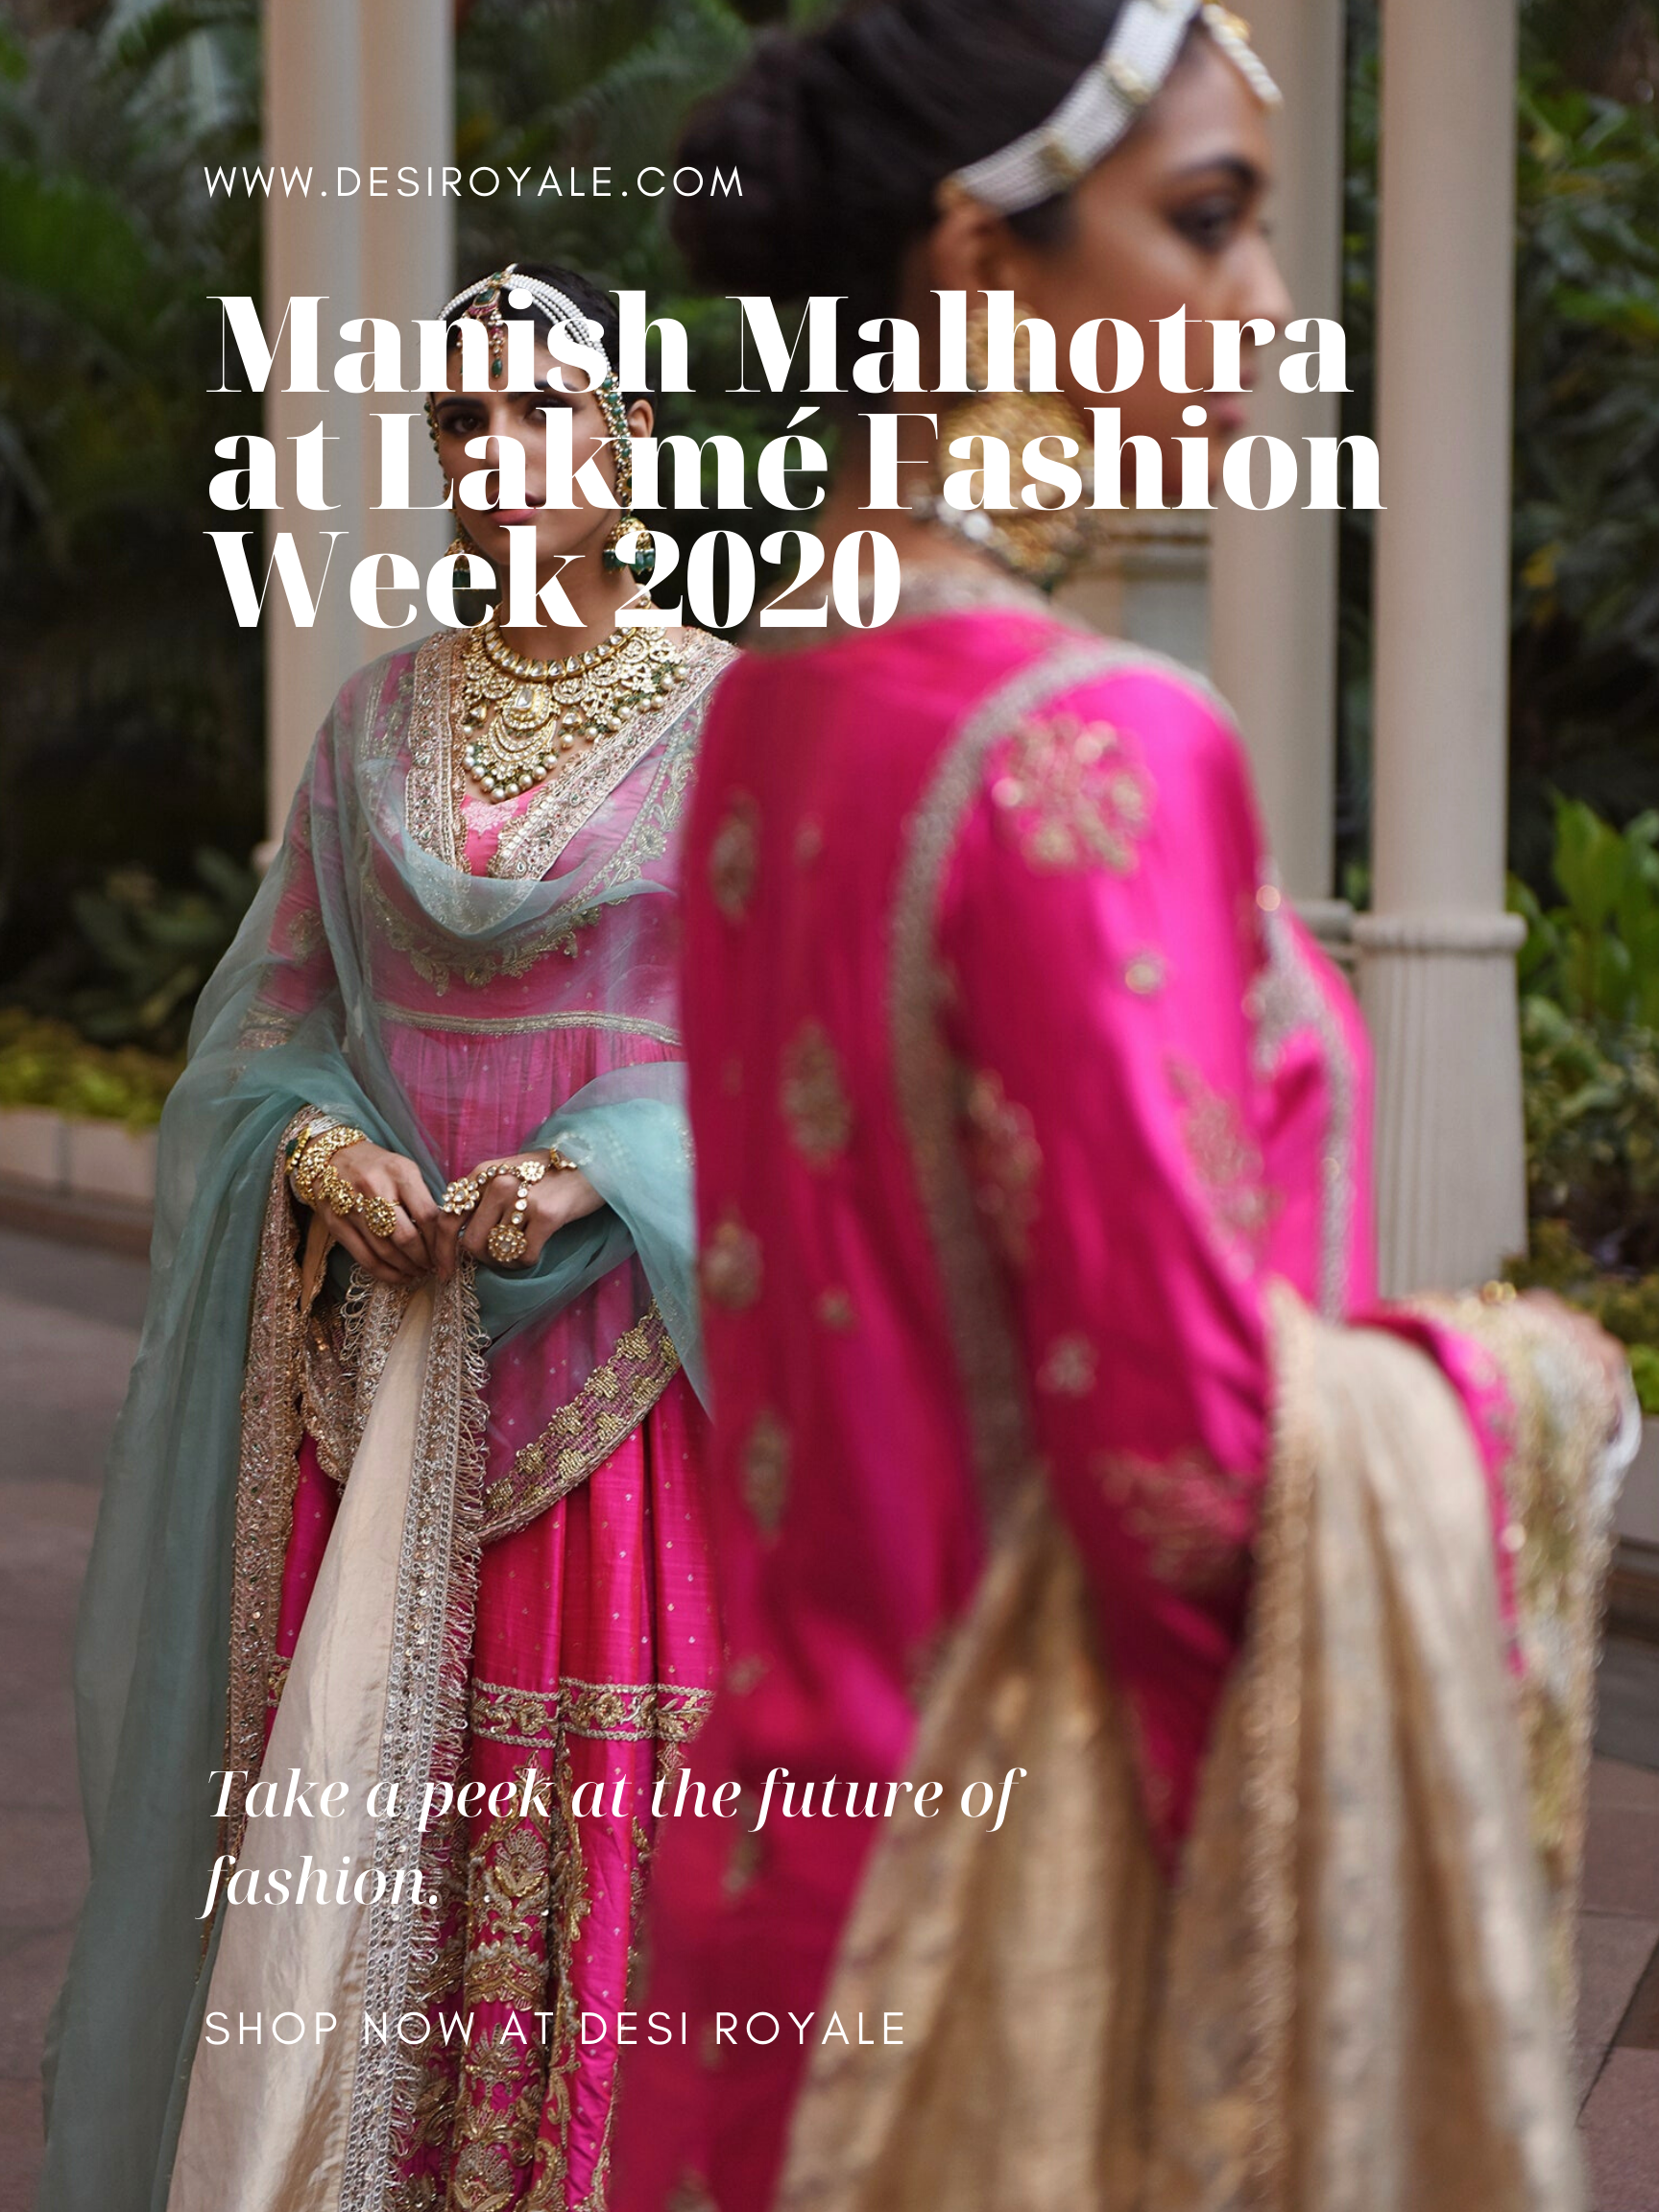 Manish Malhotra at Lakmé Fashion Week 2020